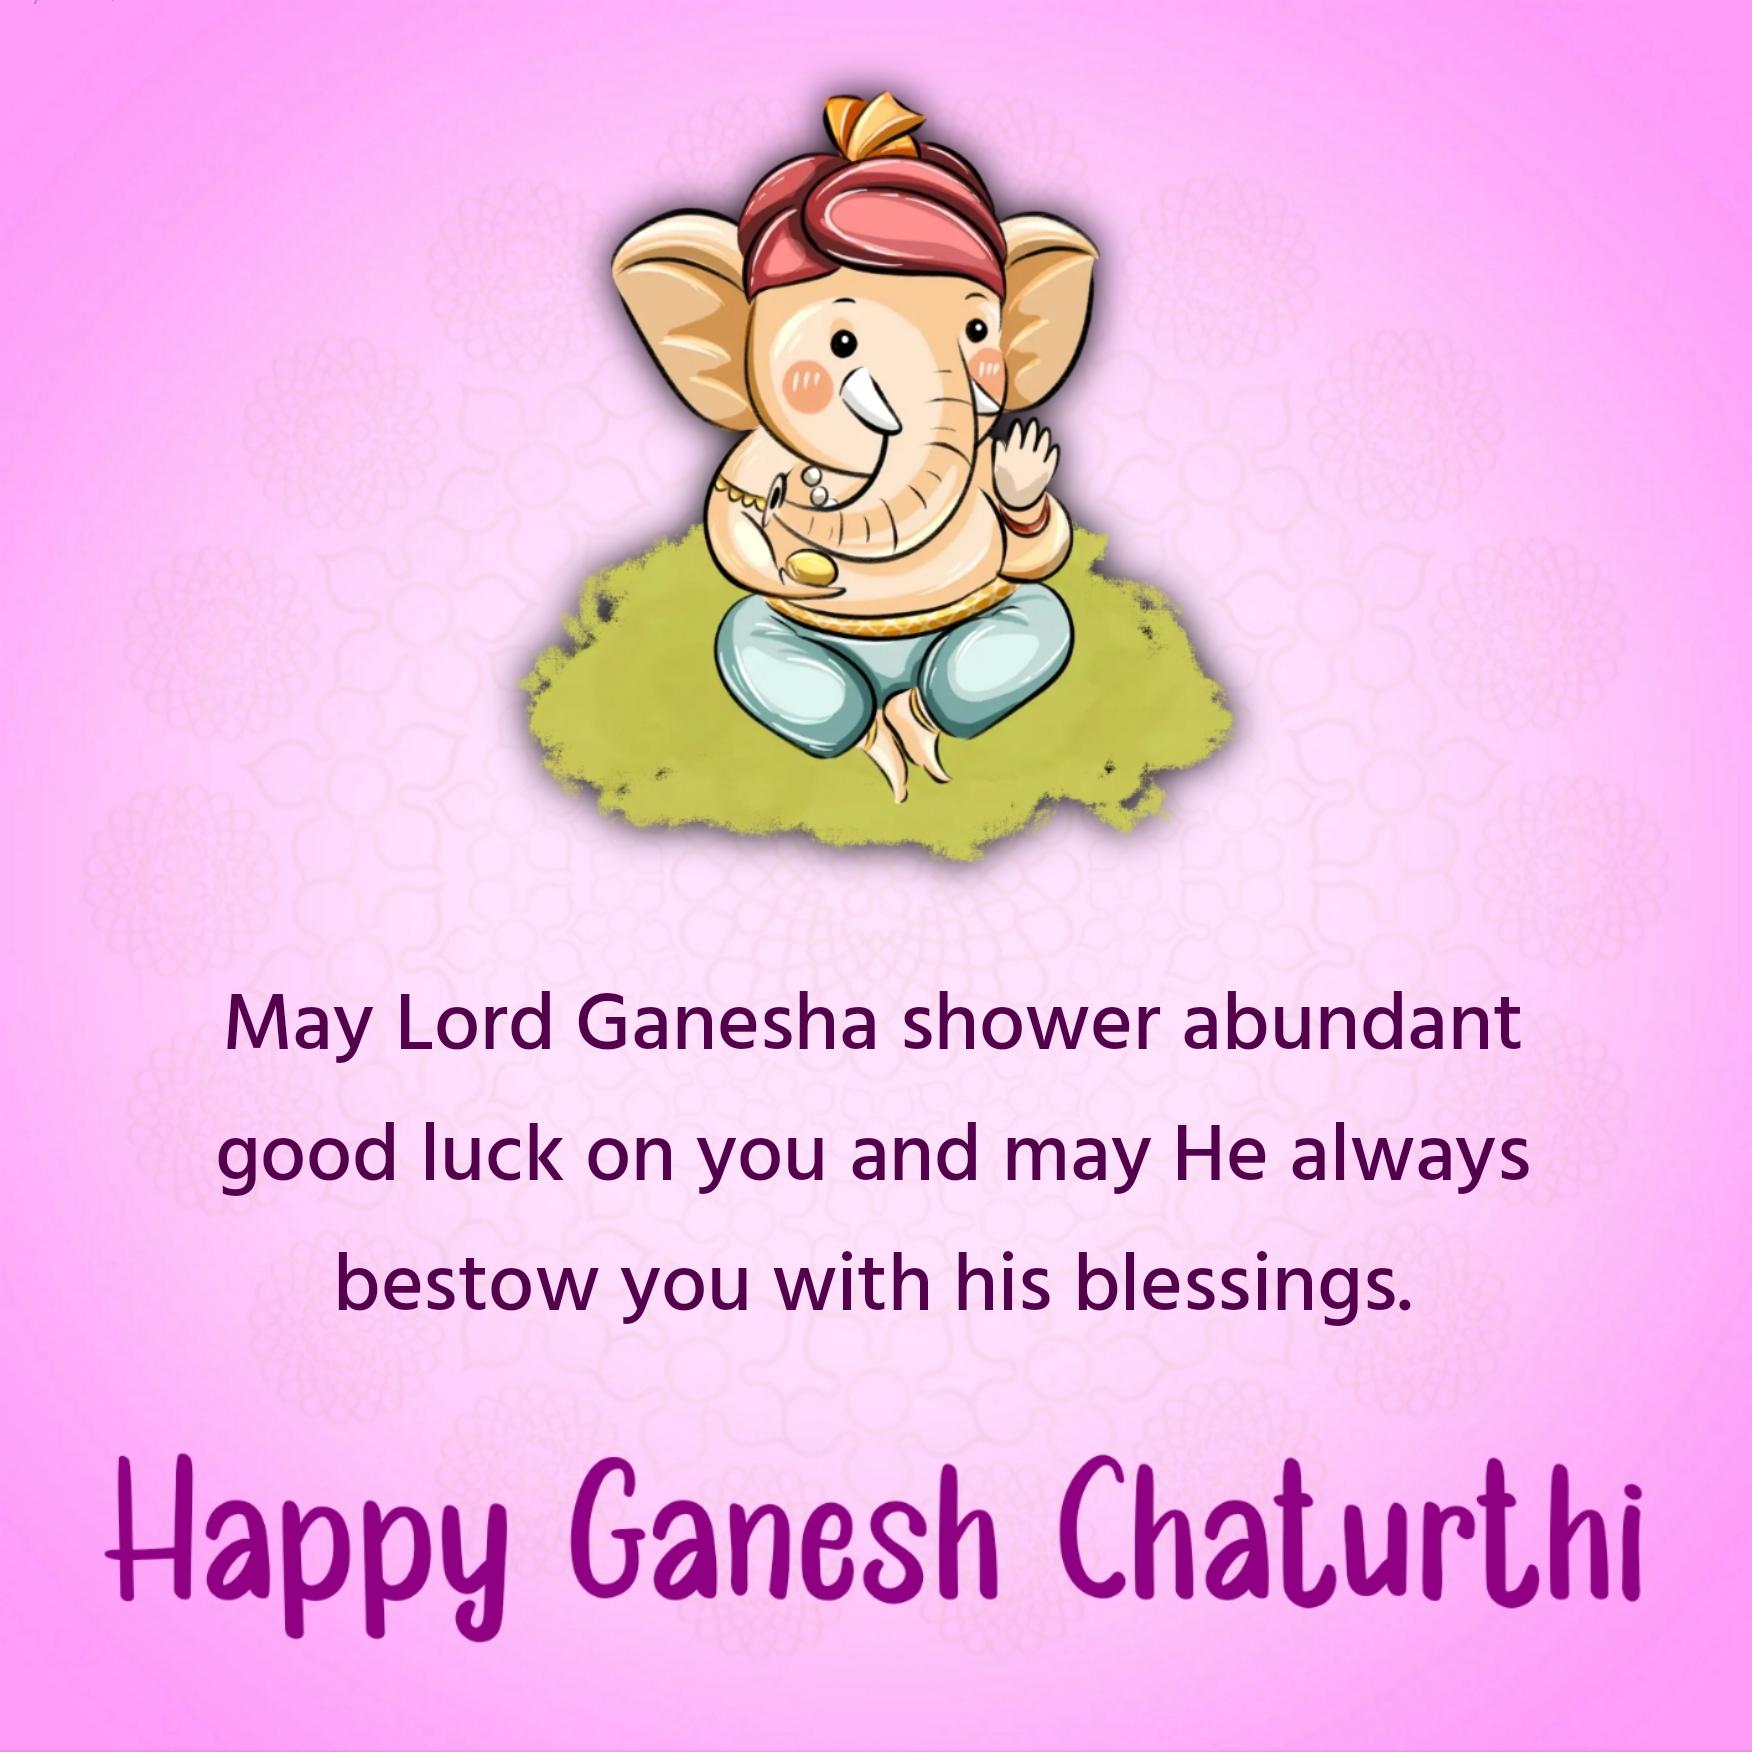 May Lord Ganesha shower abundant good luck on you